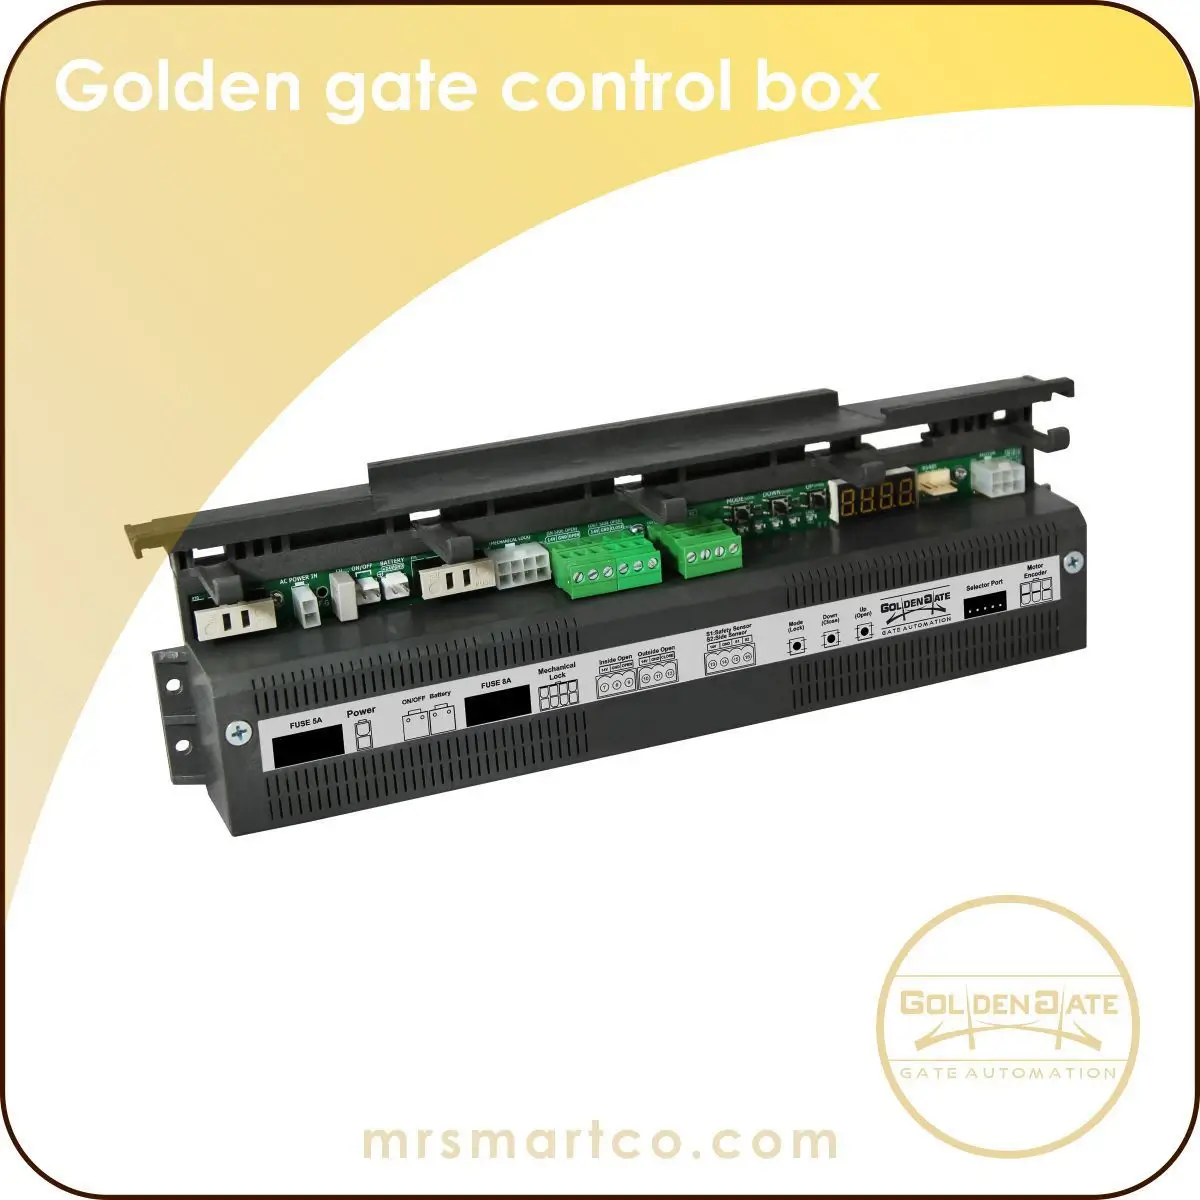 Golden gate D3 control box